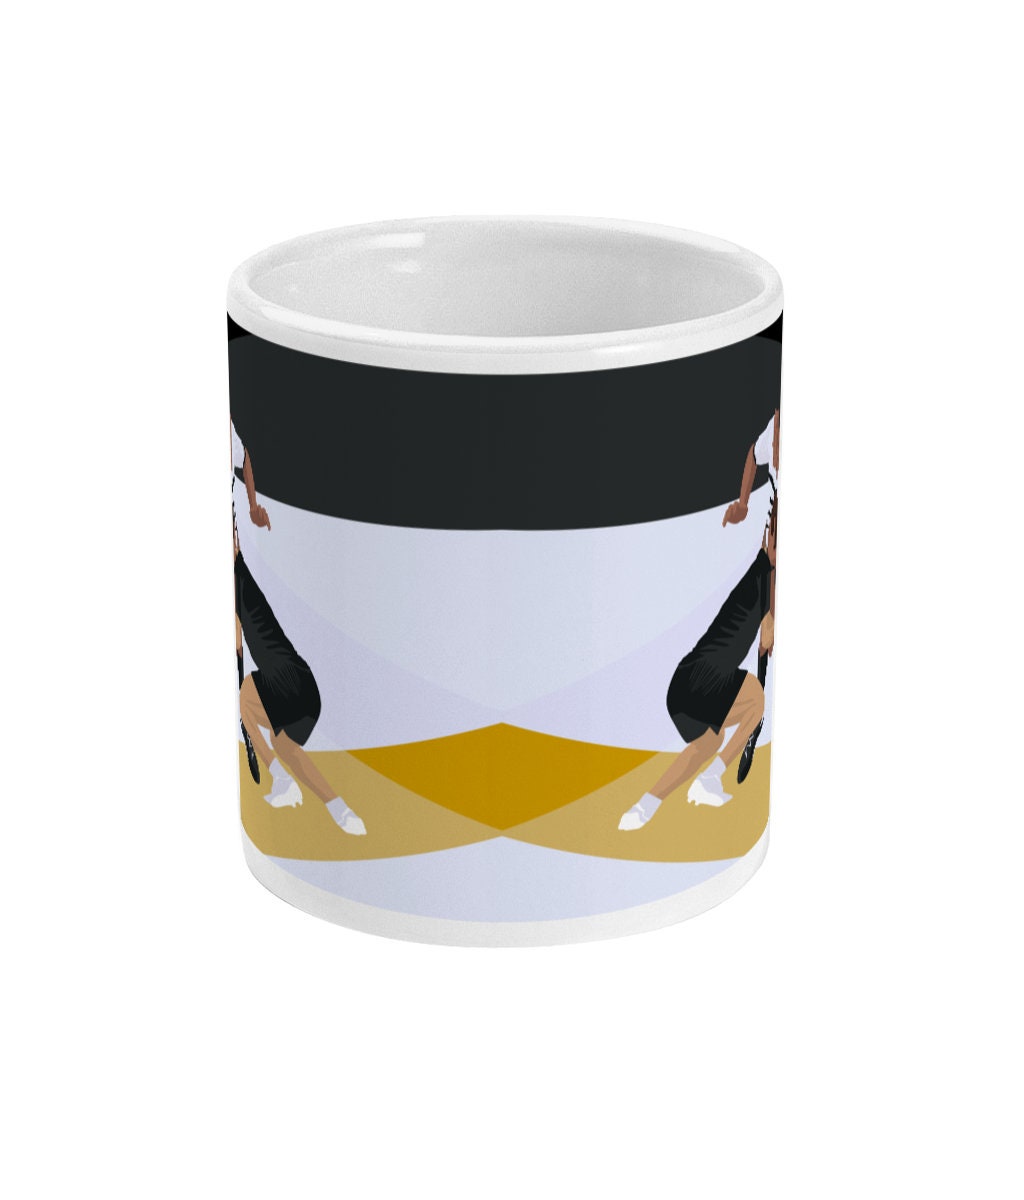 Tasse ou mug "rugby noir et jaune" - Personnalisable